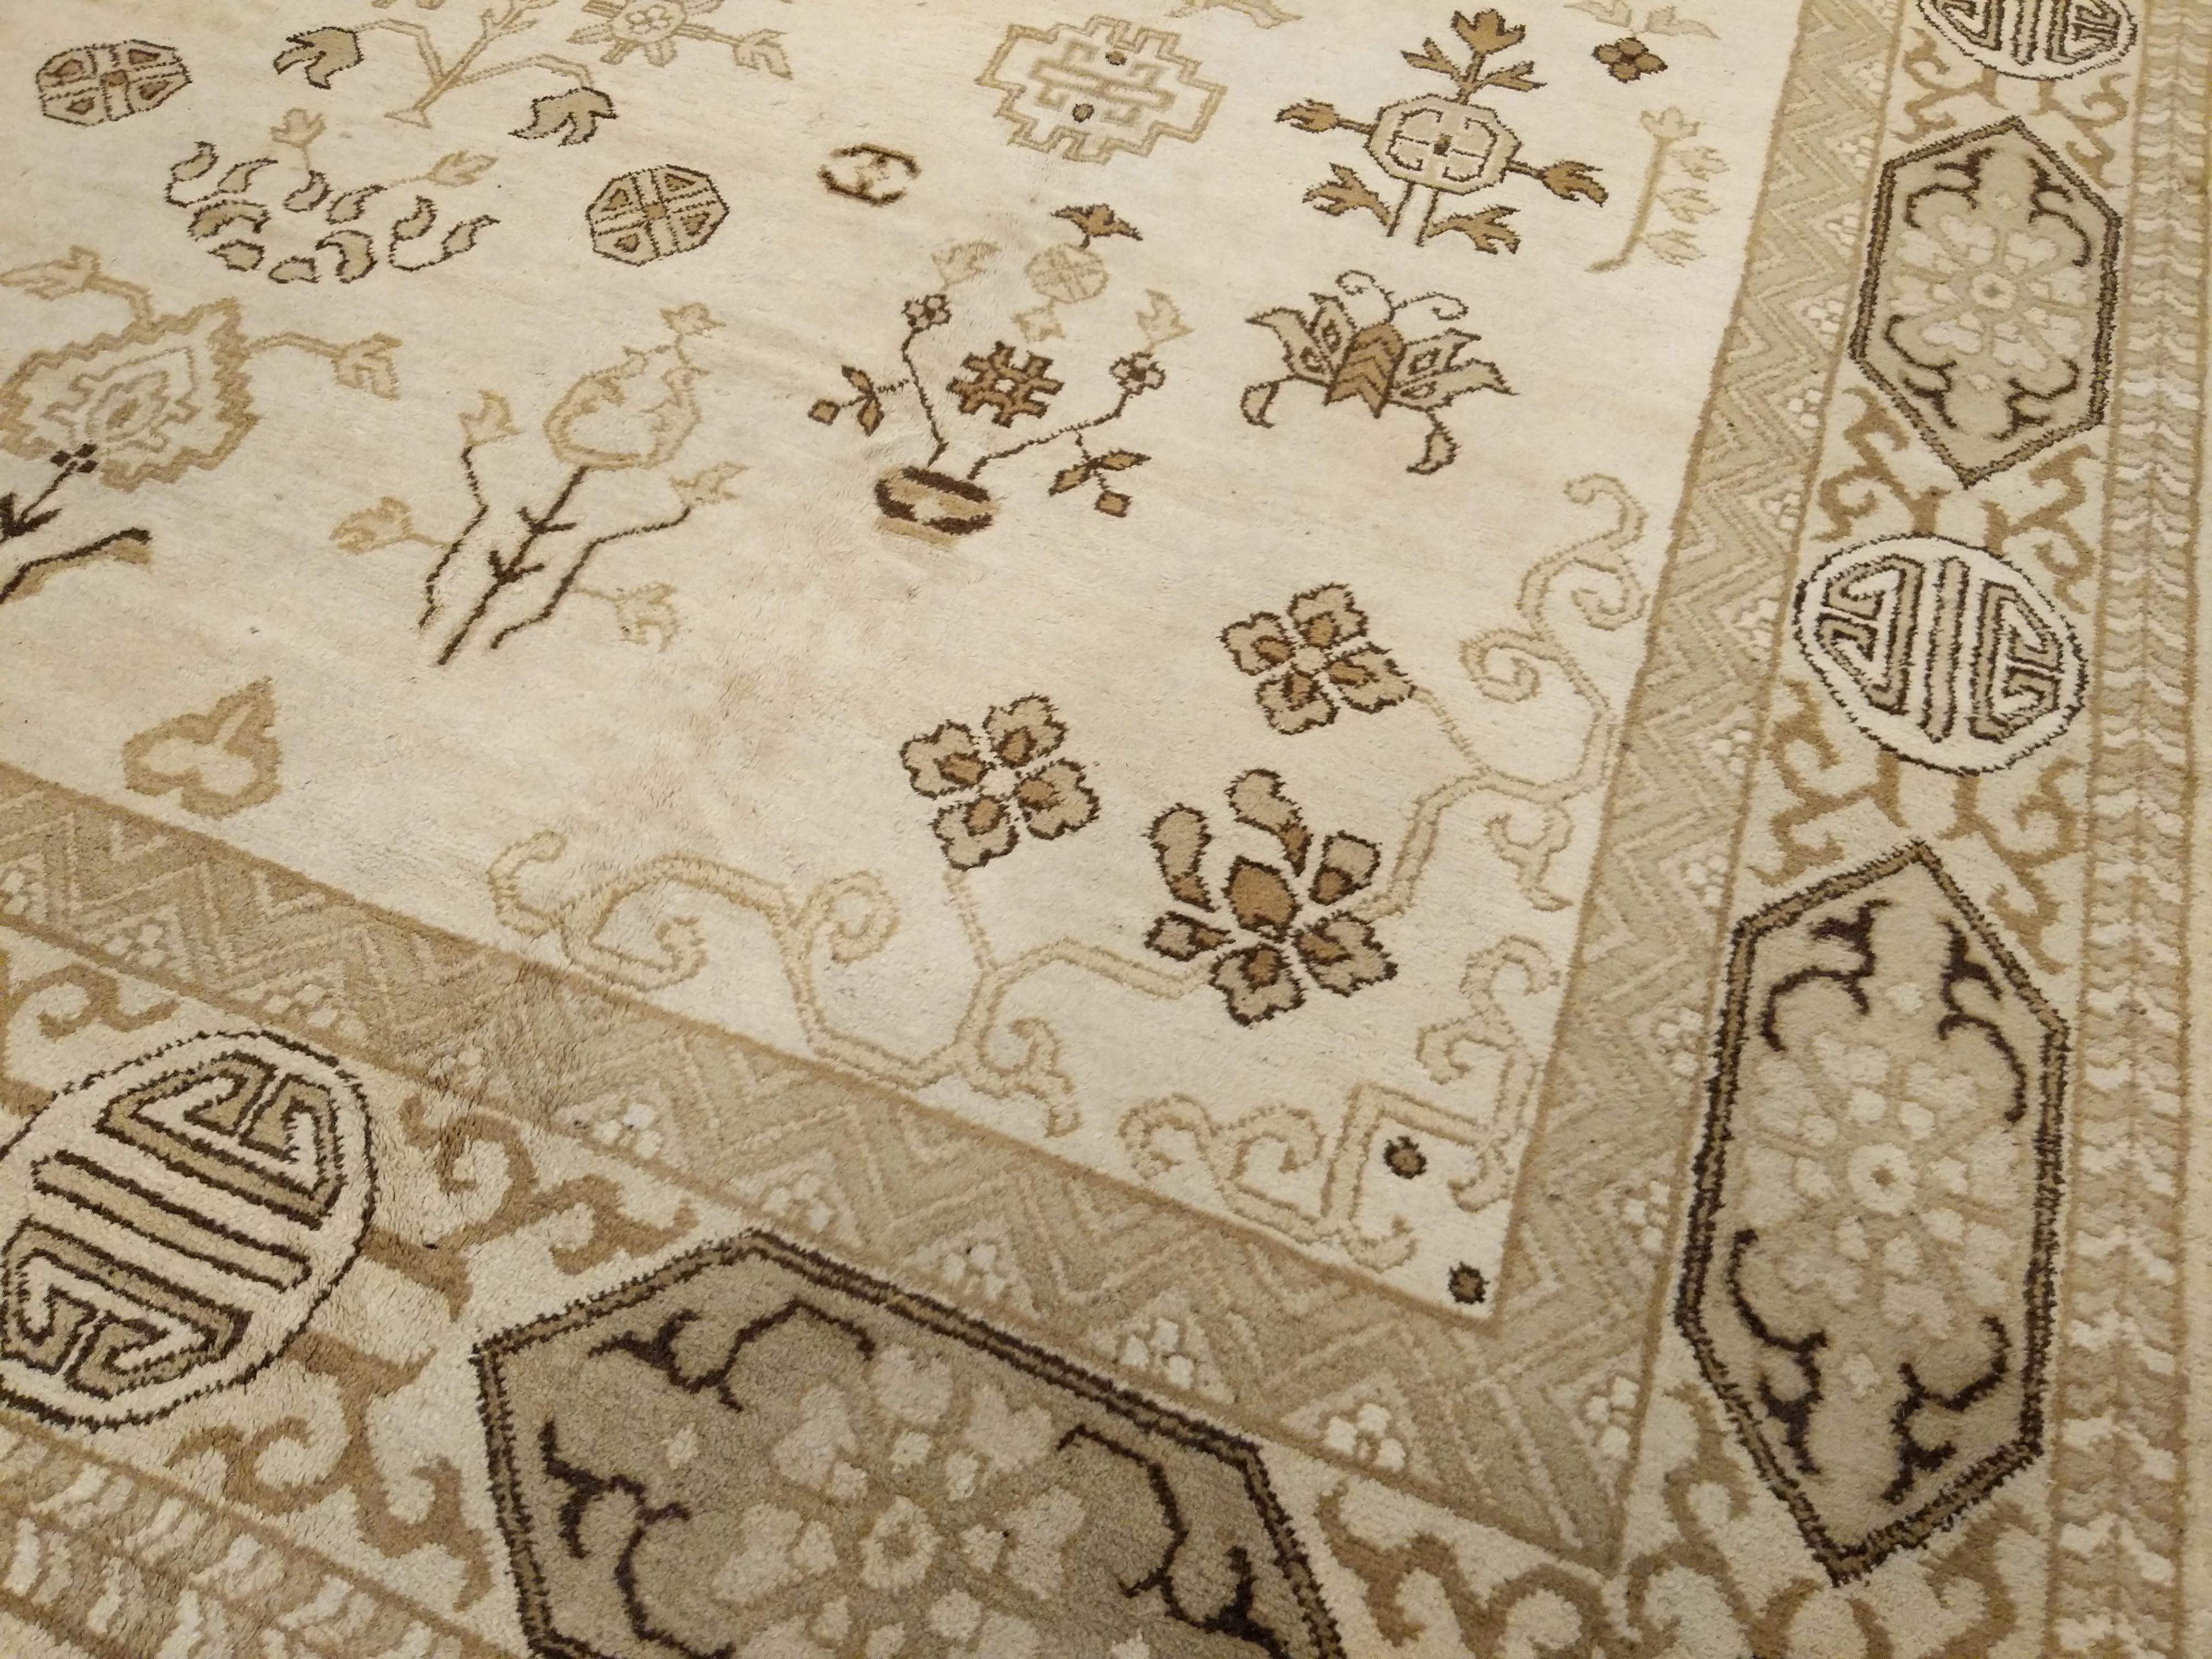 Eine bestimmte Gruppe nordindischer Teppiche ist von antiken chinesischen Webarbeiten inspiriert und wird oft als Indochine bezeichnet. Hier sehen wir eine sehr subtile Farbpalette auf elfenbeinfarbenem Hintergrund, mit einem Muster, das genau in